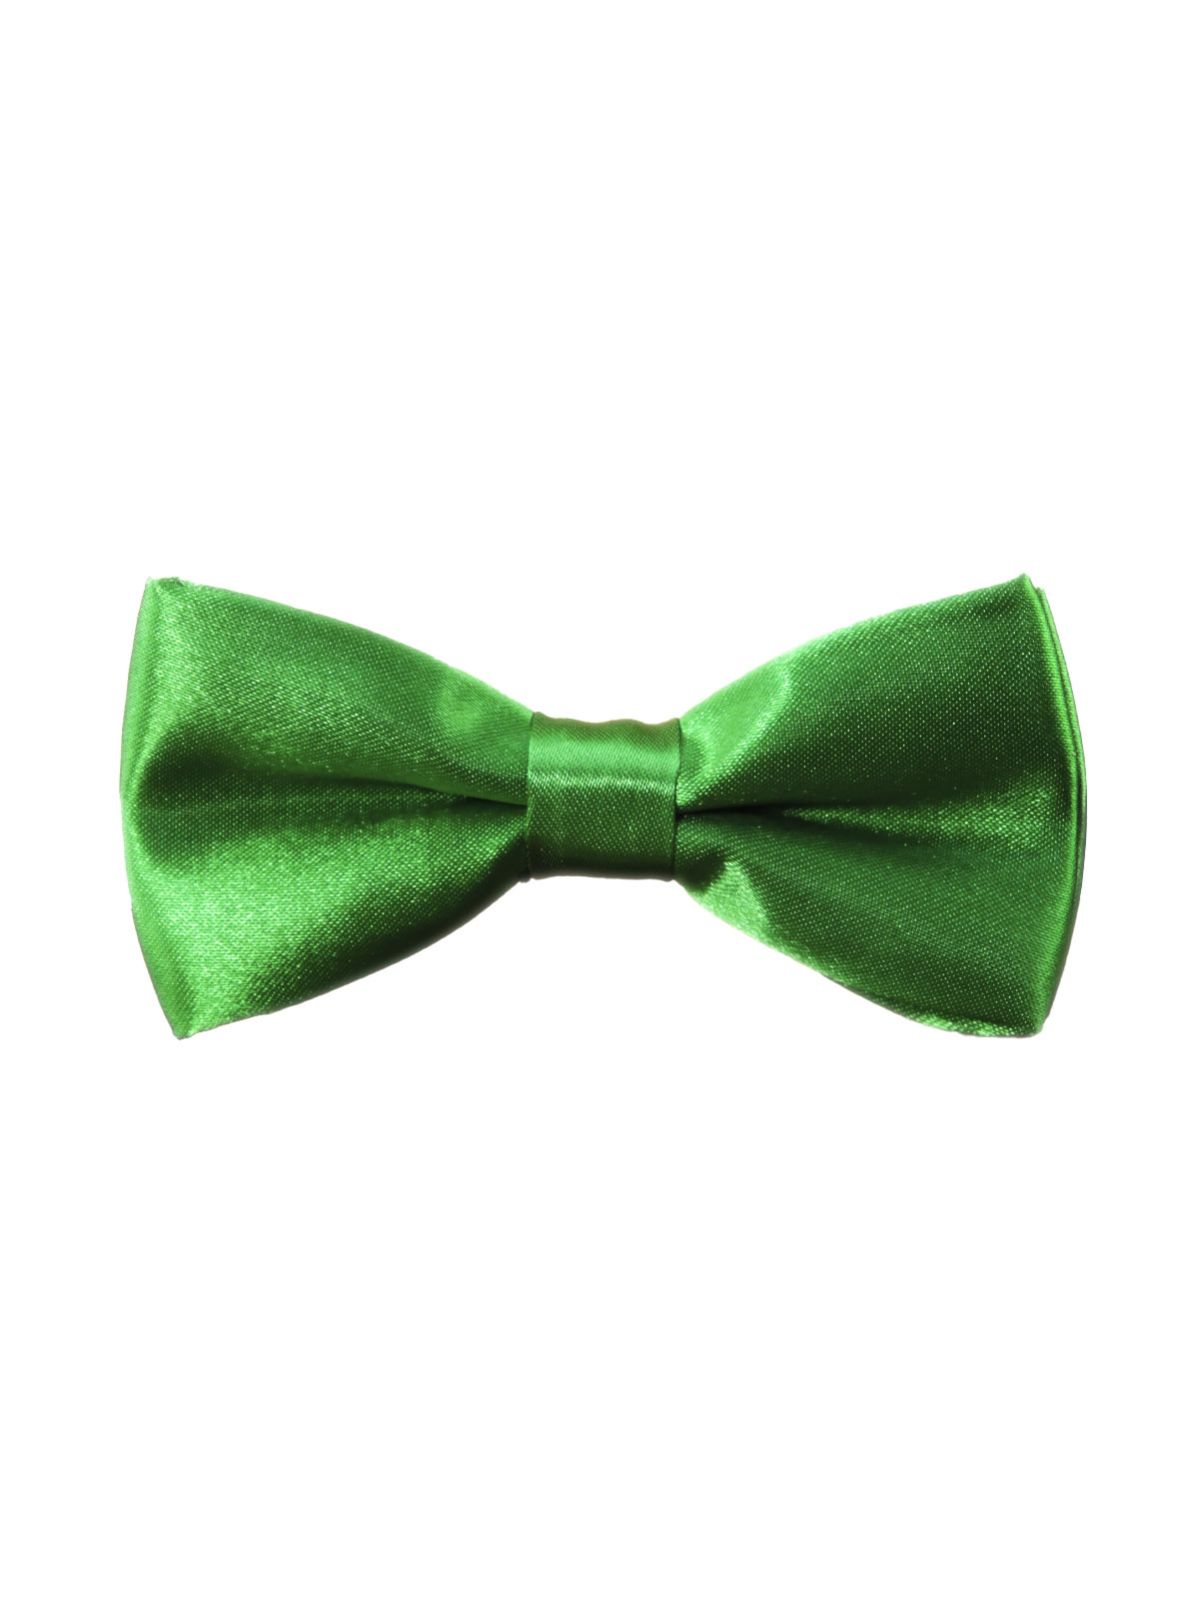 фото Детская галстук-бабочка атласная зеленая от 2beMan.ru